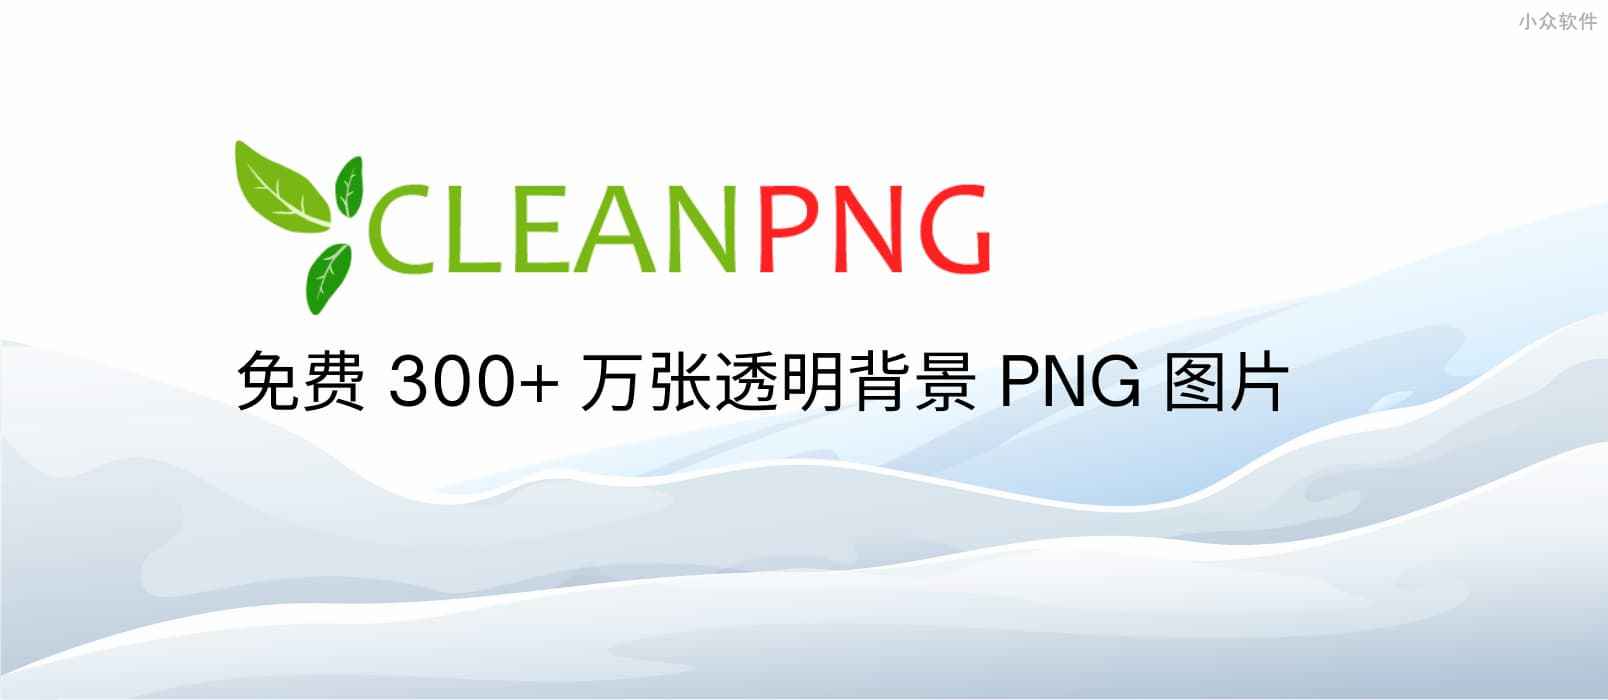 CleanPNG 透明背景图片库